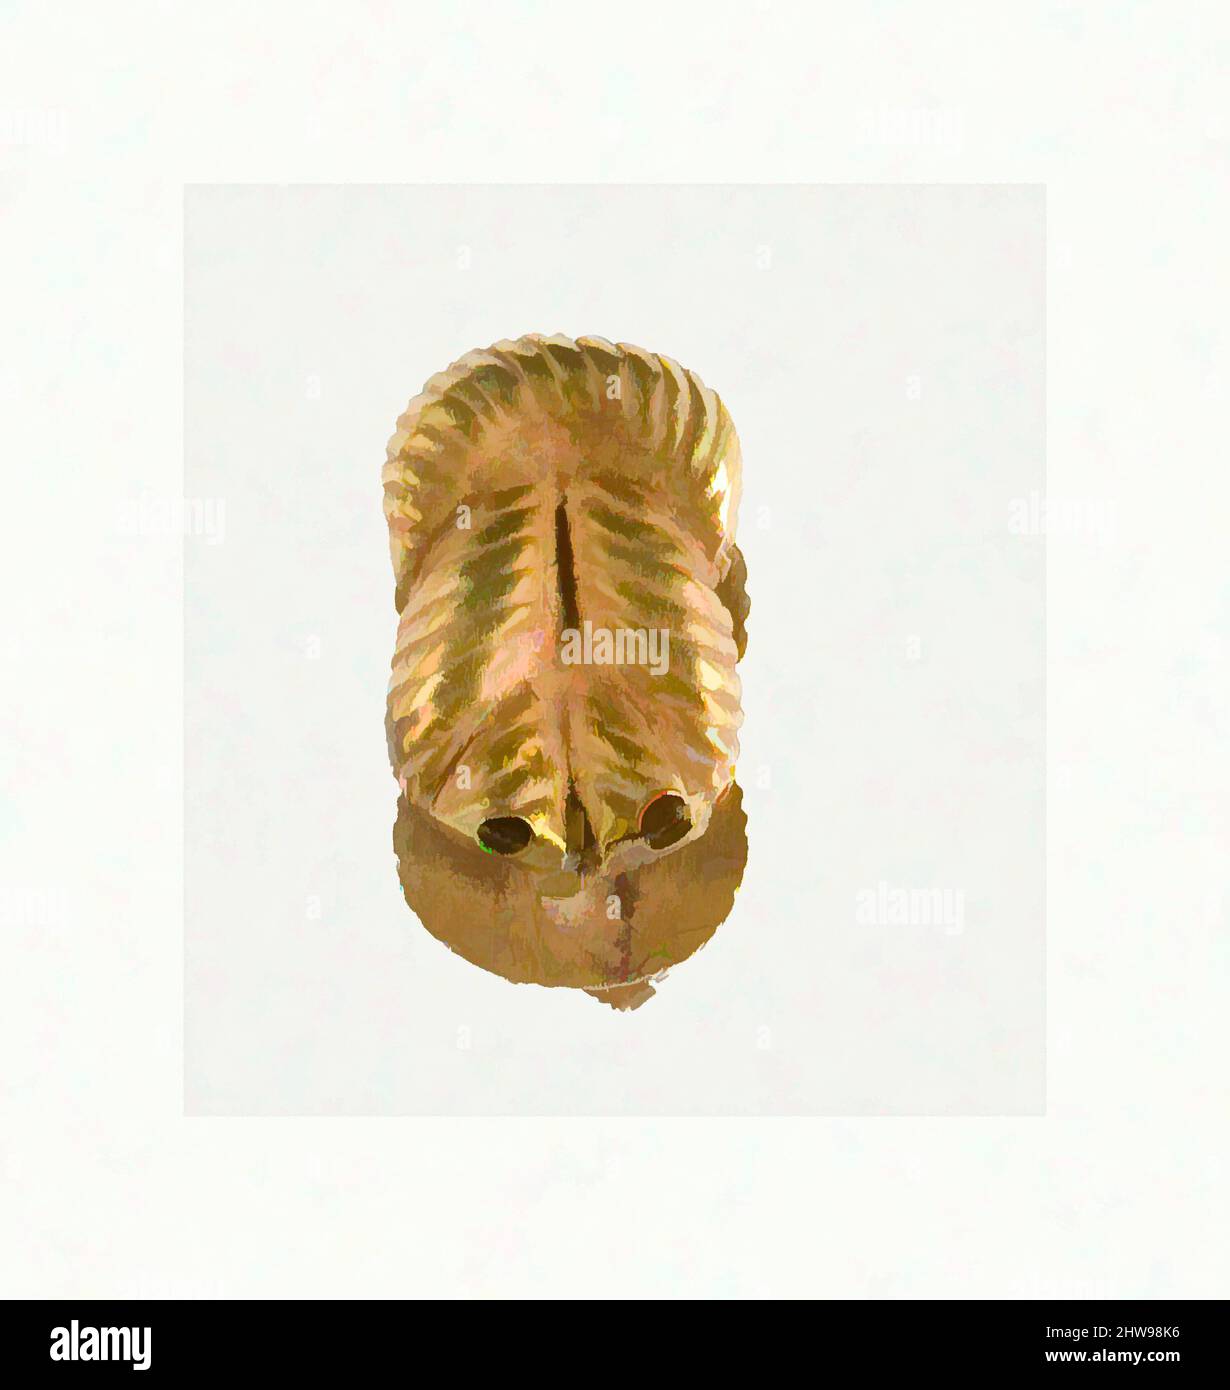 Arte ispirata dal doppio nodo clasp di Sithathoryunet, Regno di mezzo, Dinastia 12, ca. 1887–1813 a.C., dall'Egitto, zona d'ingresso di Fayum, Lahun, Tomba di Sithathoryunet (BSA Tomb 8), scavi di BSAE 1914, Oro, h. 1,3 cm (1/2 poll.); w. 0,9 cm (3/8 pollici), opere classiche modernizzate da Artotop con un tuffo di modernità. Forme, colore e valore, impatto visivo accattivante sulle emozioni artistiche attraverso la libertà delle opere d'arte in modo contemporaneo. Un messaggio senza tempo che persegue una nuova direzione selvaggiamente creativa. Artisti che si rivolgono al supporto digitale e creano l'NFT Artotop Foto Stock